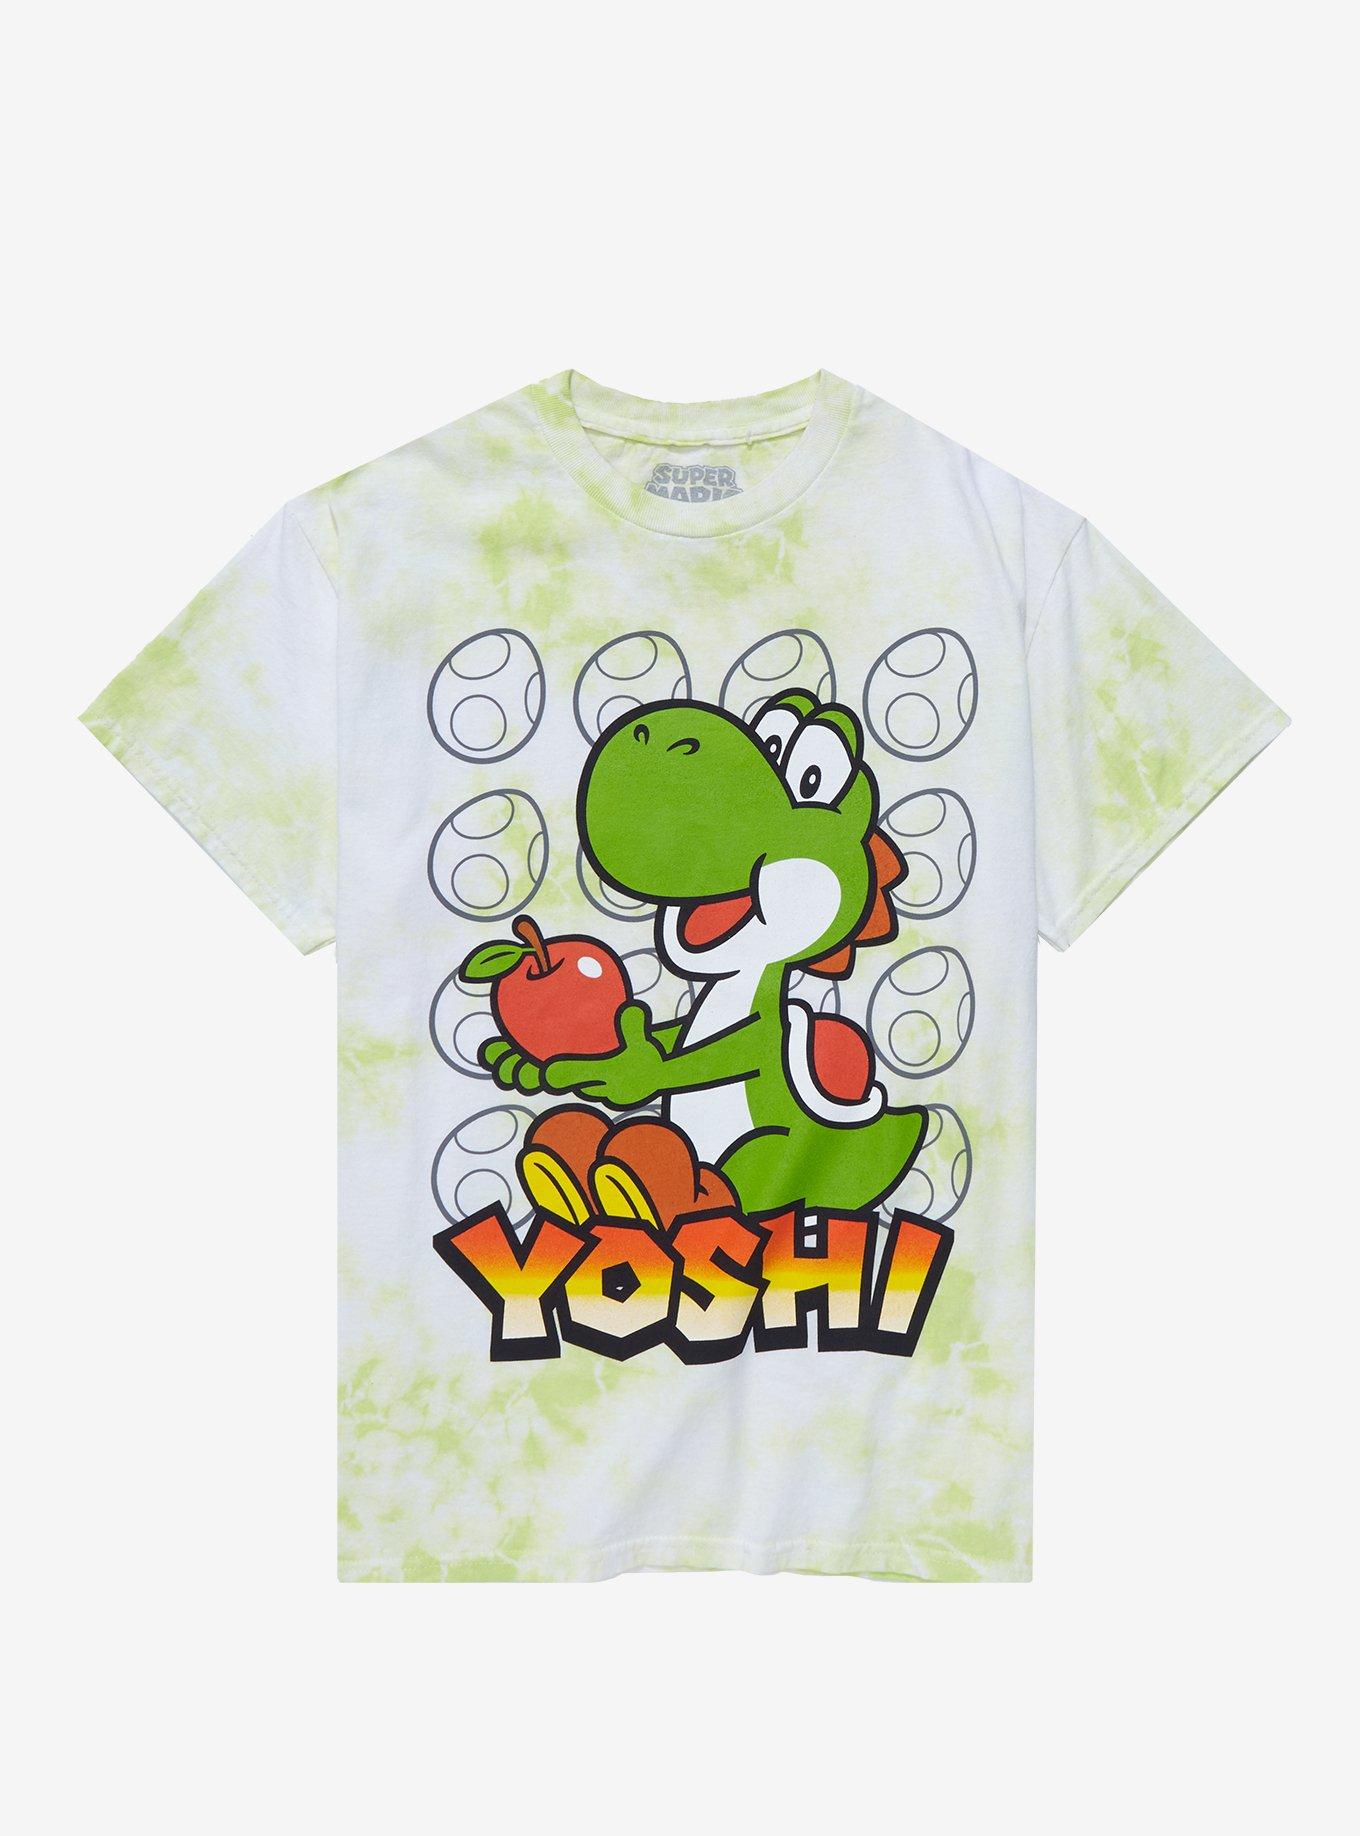 Super Mario Yoshi Apple Tie-Dye T-Shirt | Hot Topic